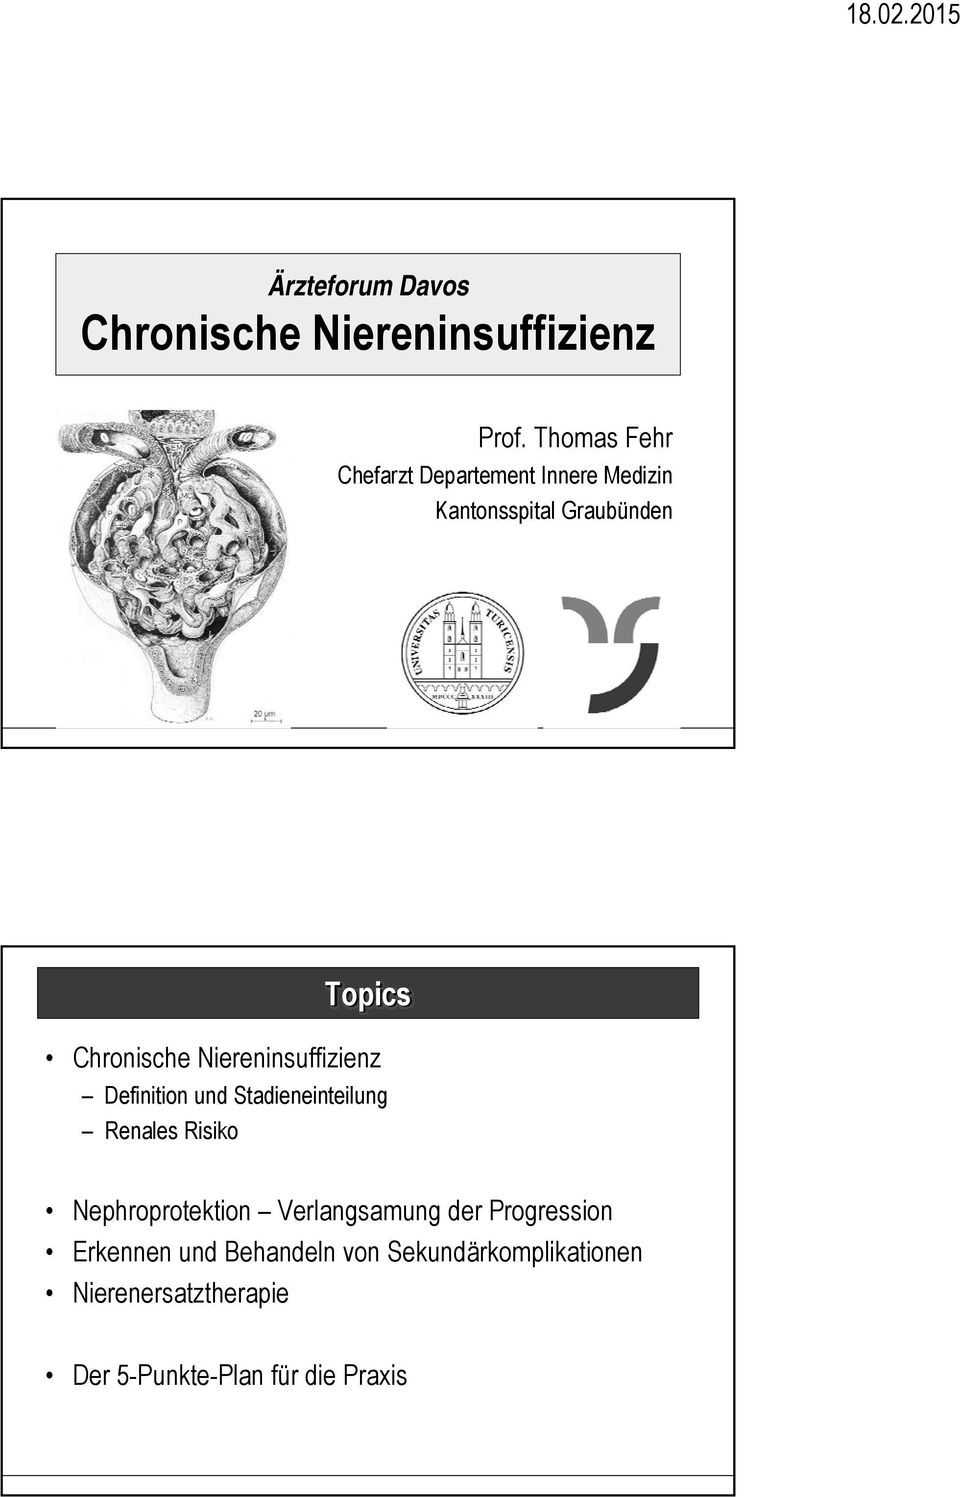 Niereninsuffizienz Definition und Stadieneinteilung Renales Risiko Nephroprotektion